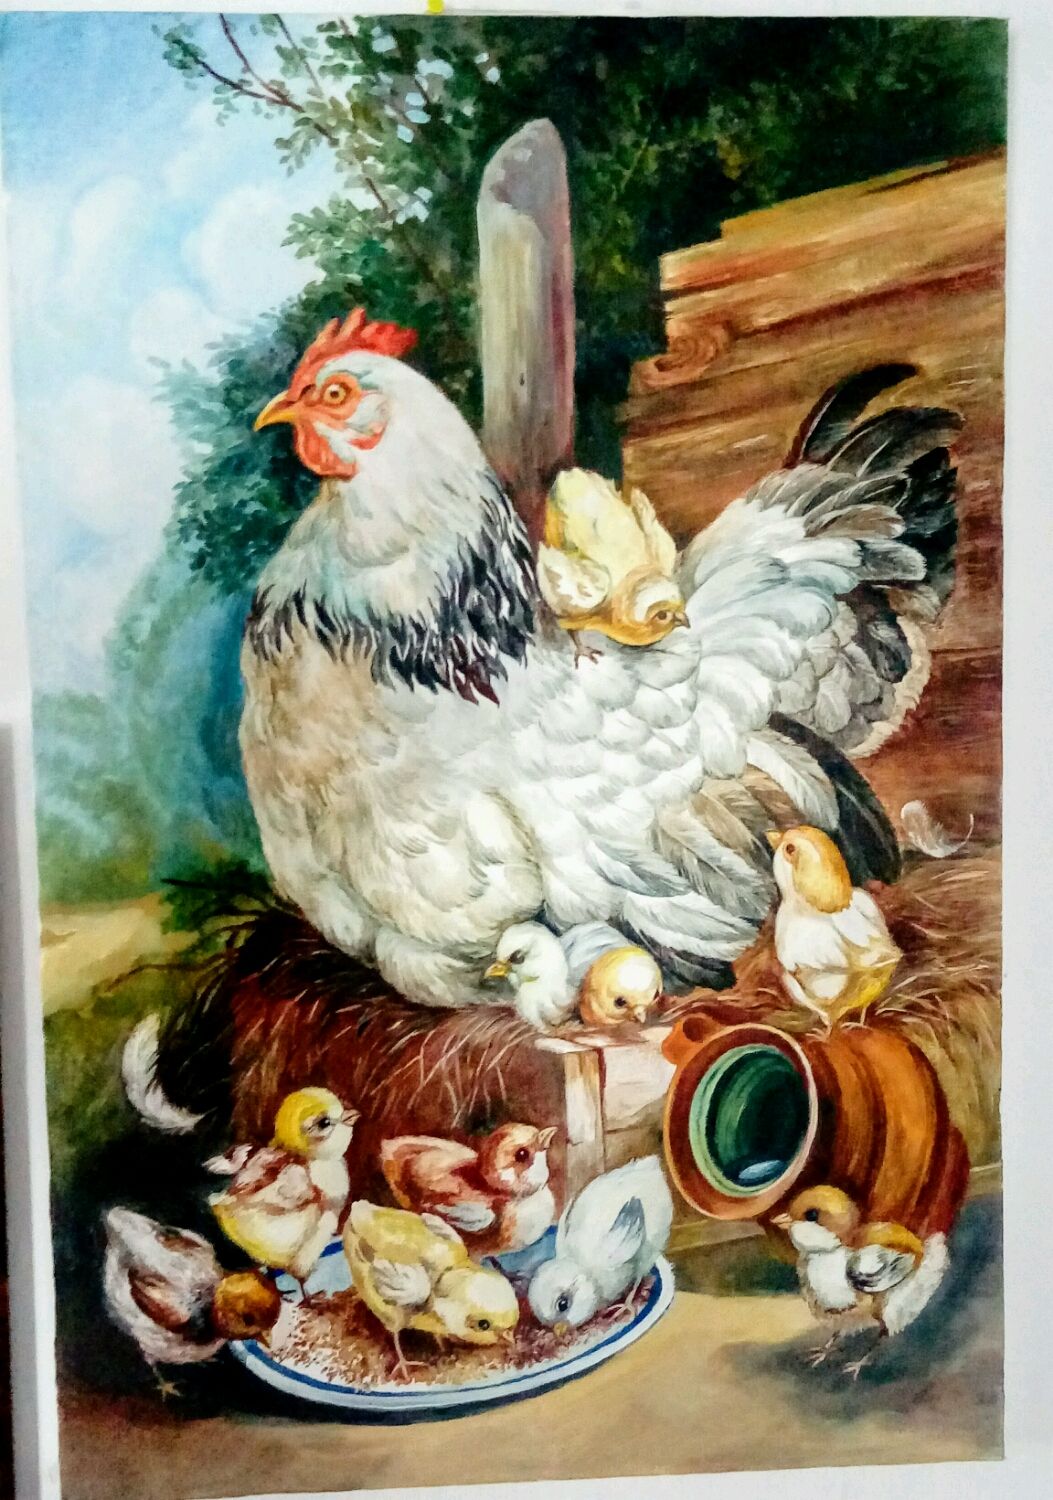 Курочка с цыплятами